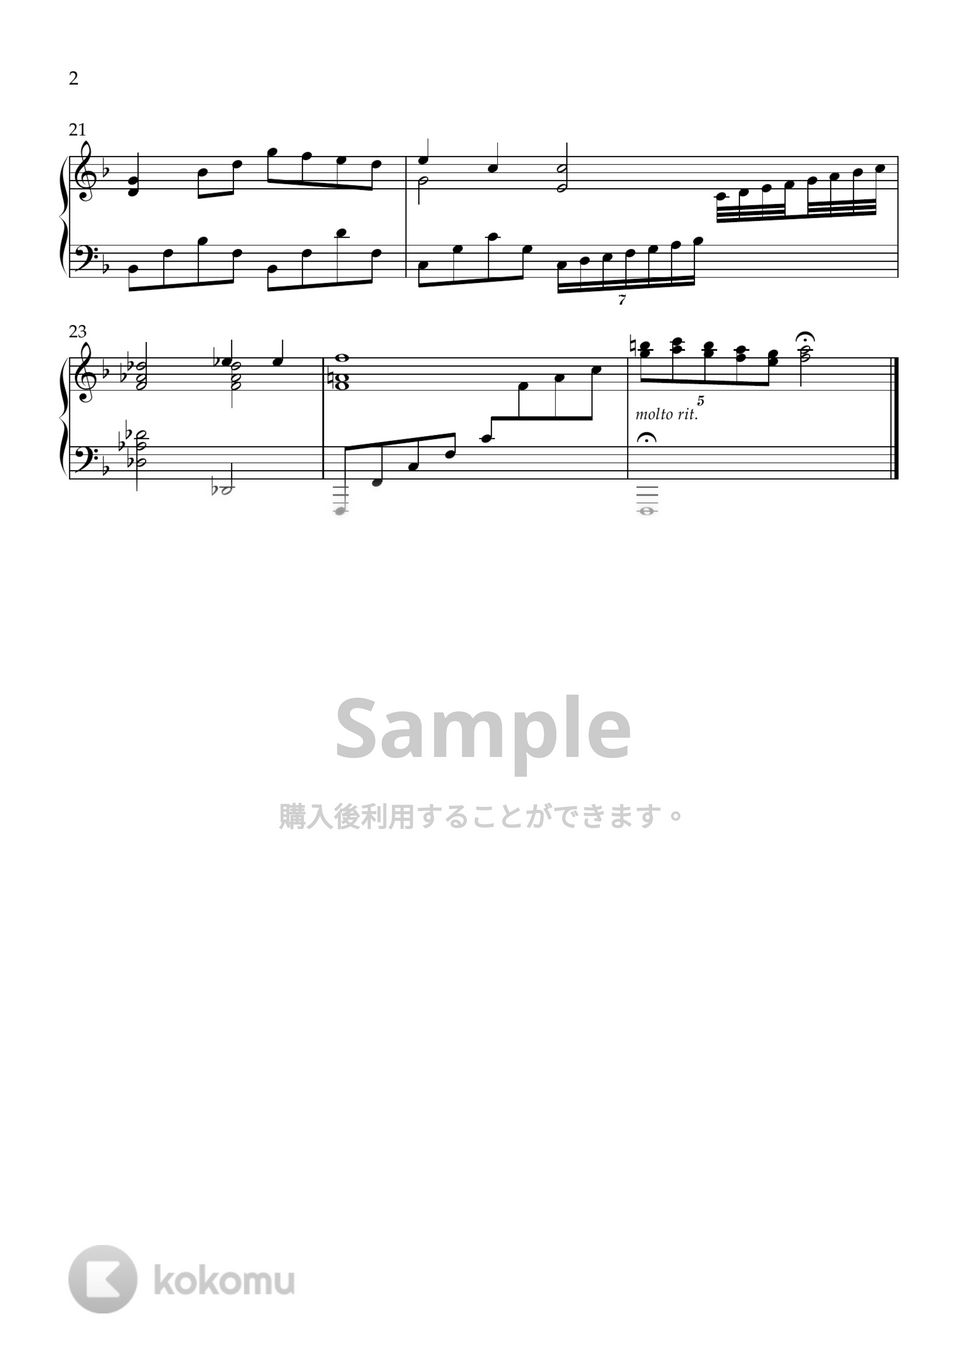 Katsu Hoshi - おはなはん-おもひでぽろぽろ OST by Pian'orche